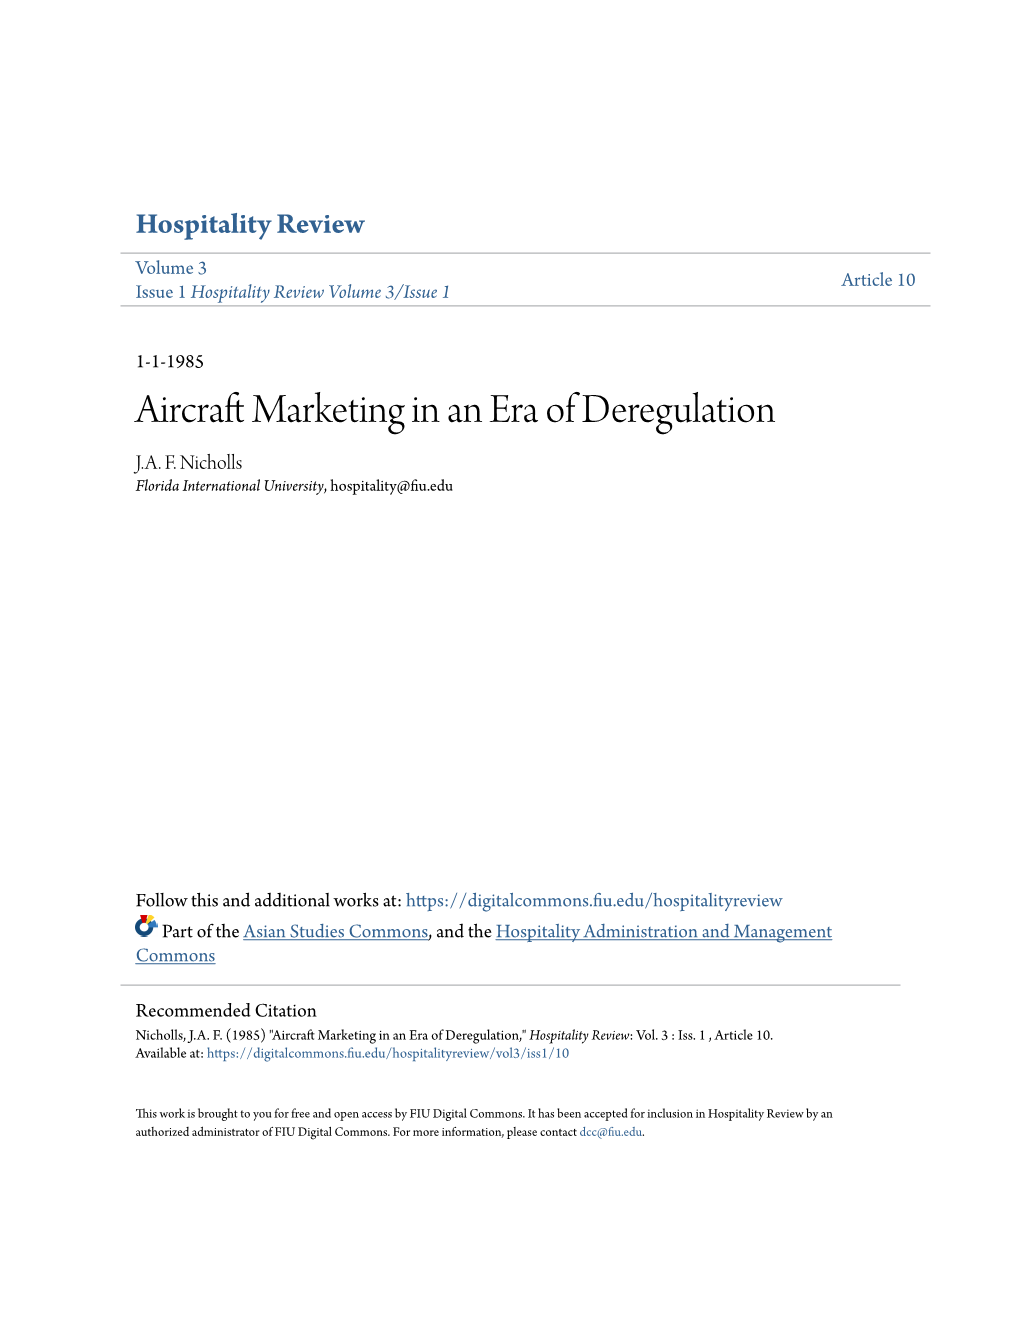 Aircraft Marketing in an Era of Deregulation